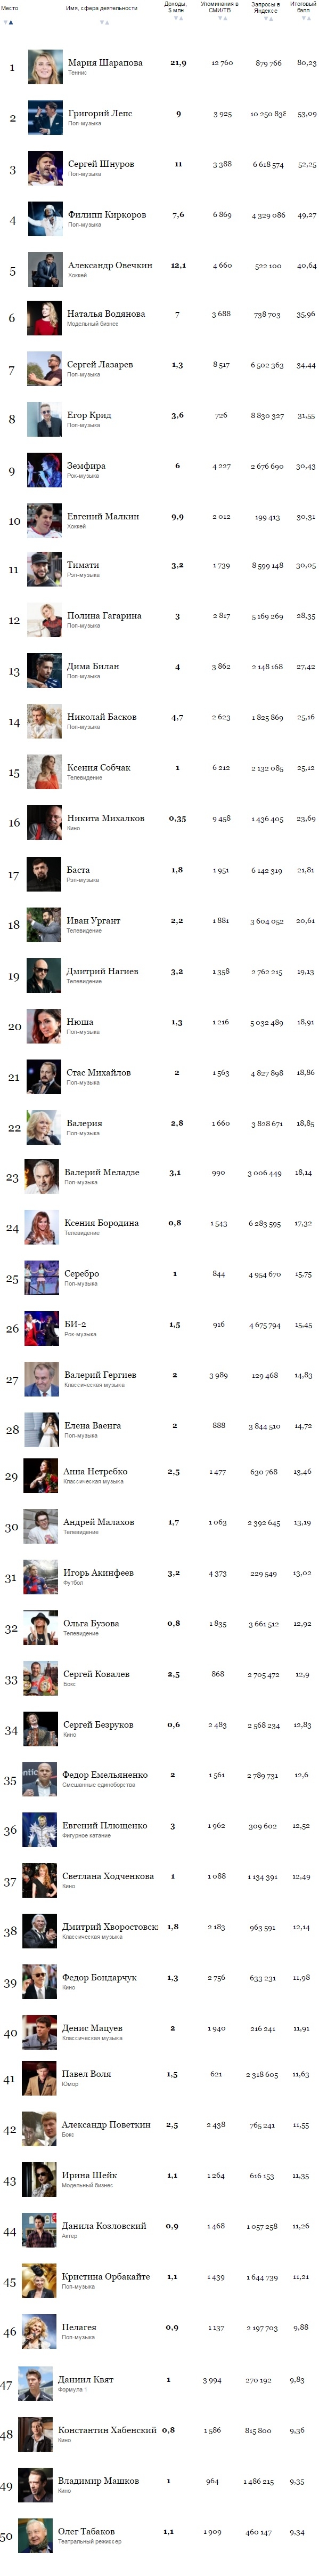 Ольга Бузова порадовалась, что попала в ТОП 50 самых богатых и популярных знаменитостей России по версии Forbes